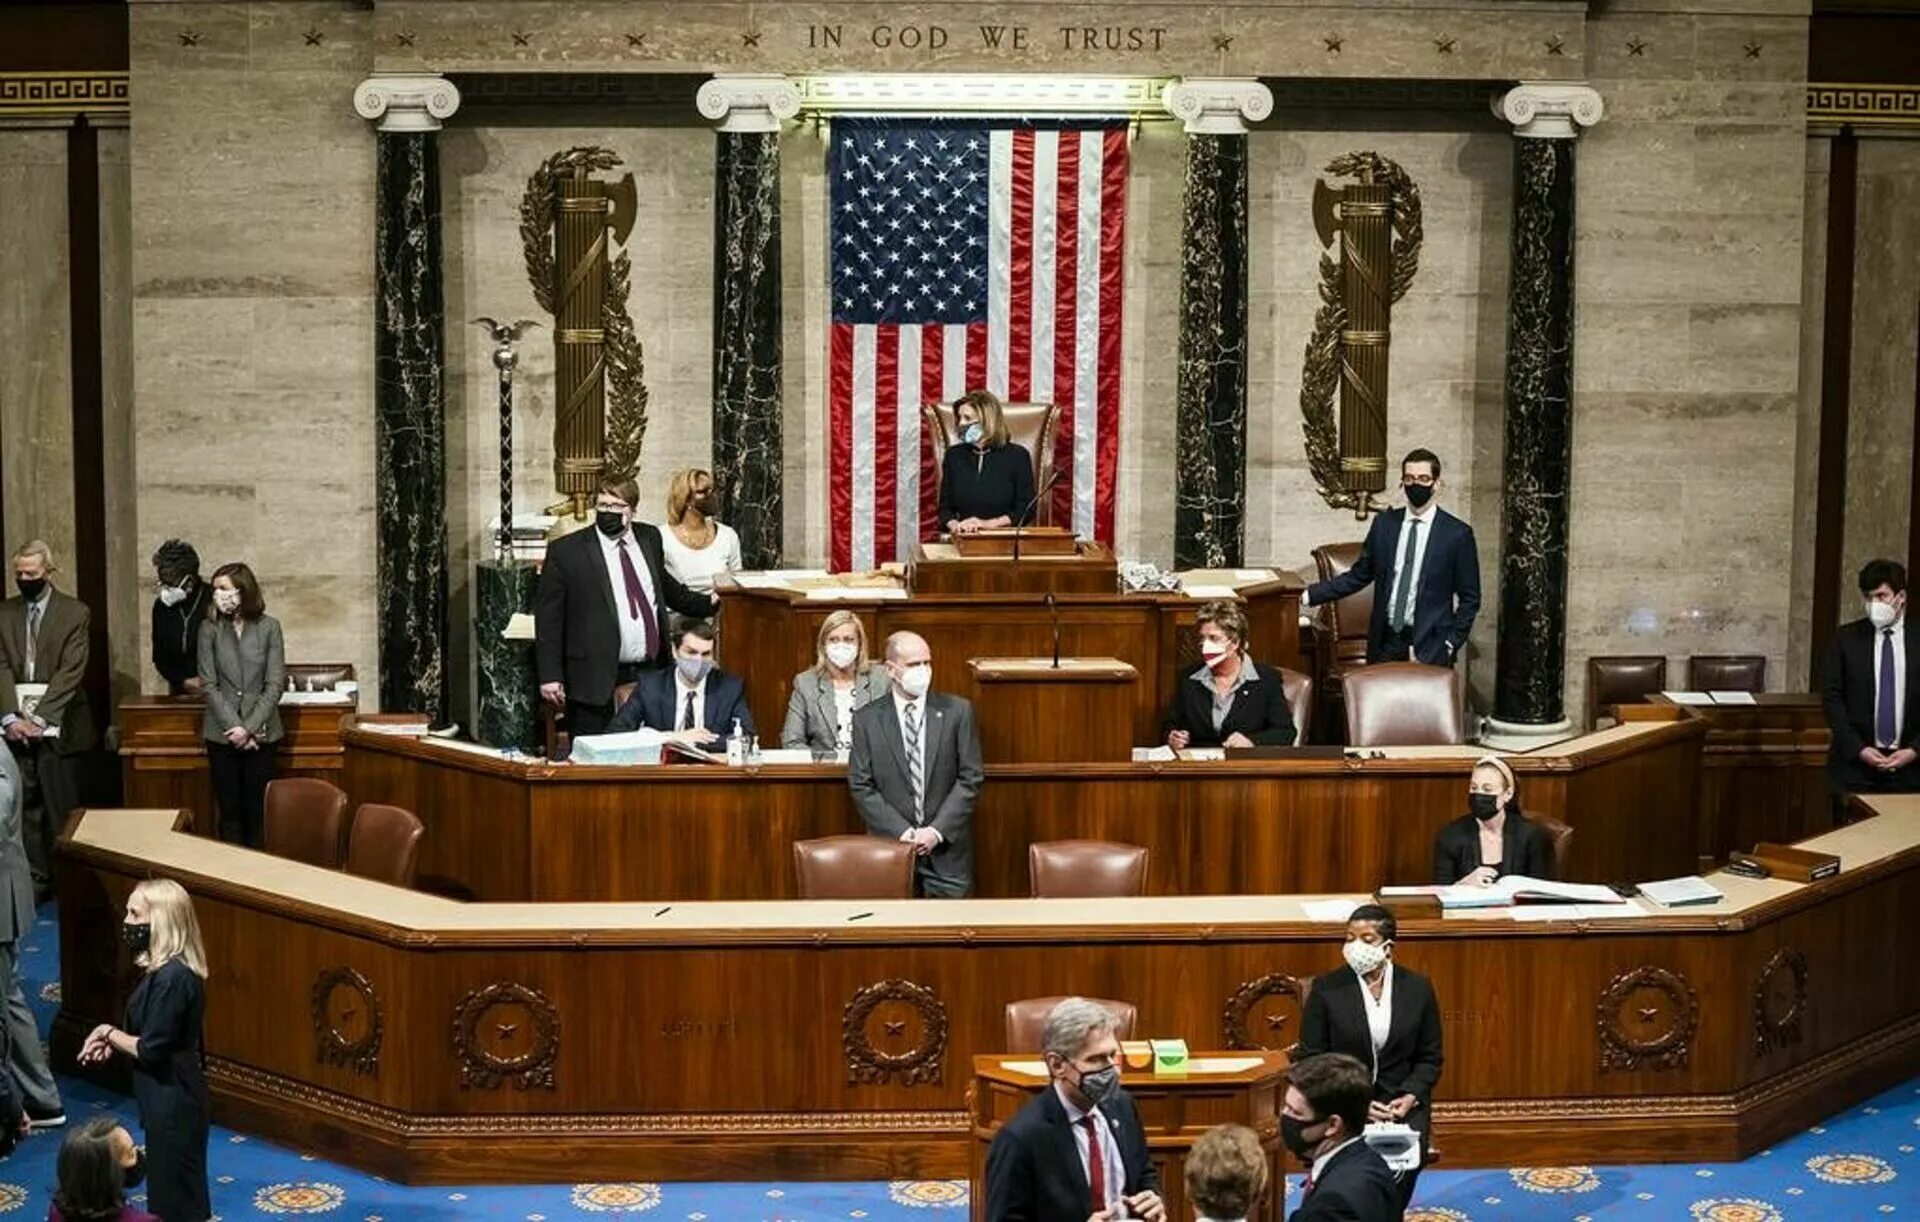 Палата представителей конгресса США. Конгресс Сенат и палата представителей. Сенат конгресса США. Конгресс США 2 палаты.